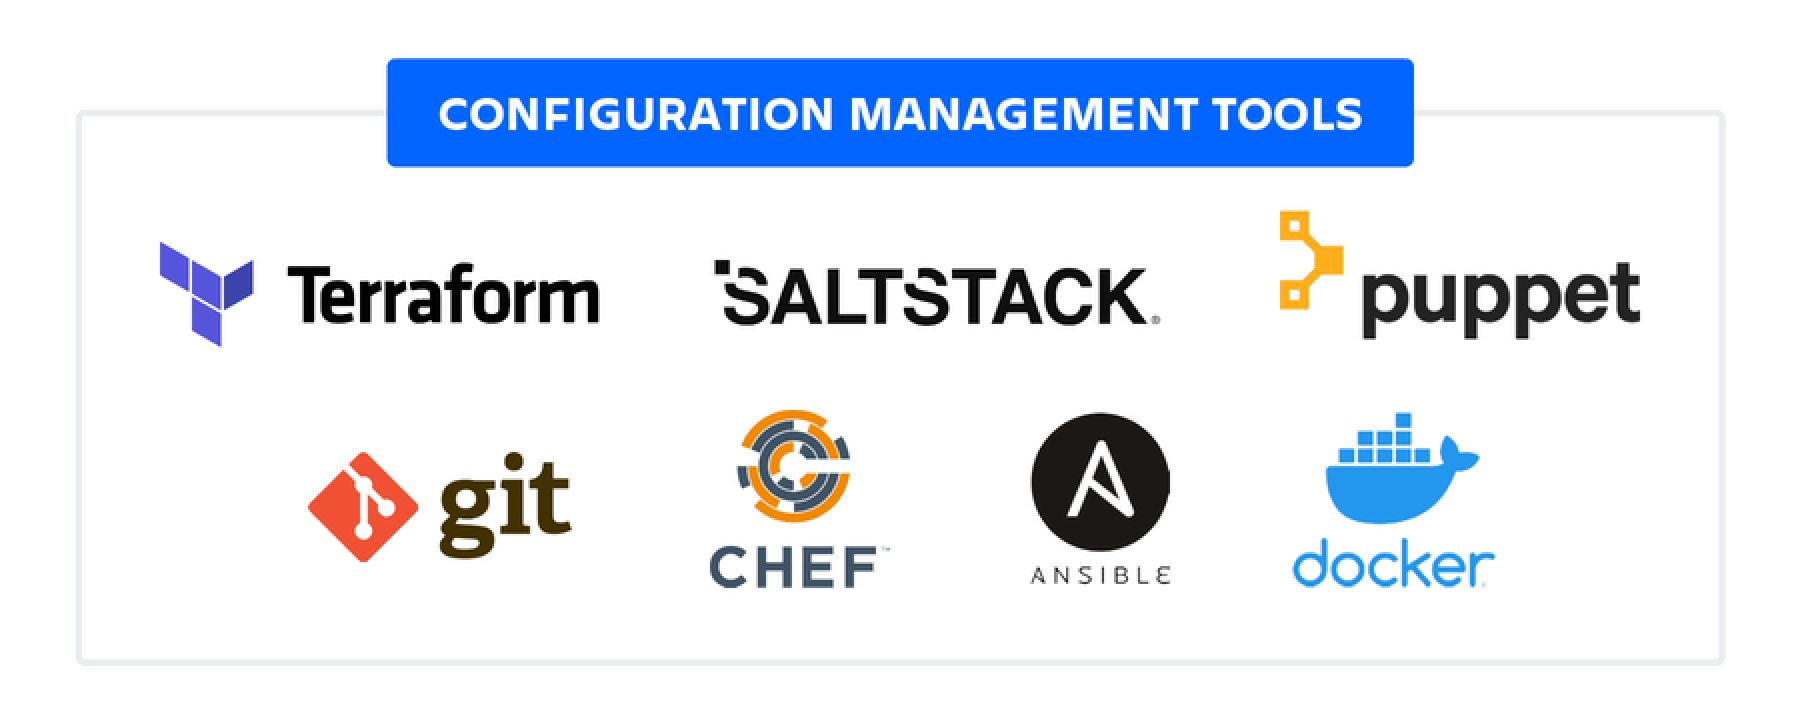 Narzędzia do zarządzania konfiguracją: Terraform, Saltstack, Puppet, Git, Chef, Ansible i Docker